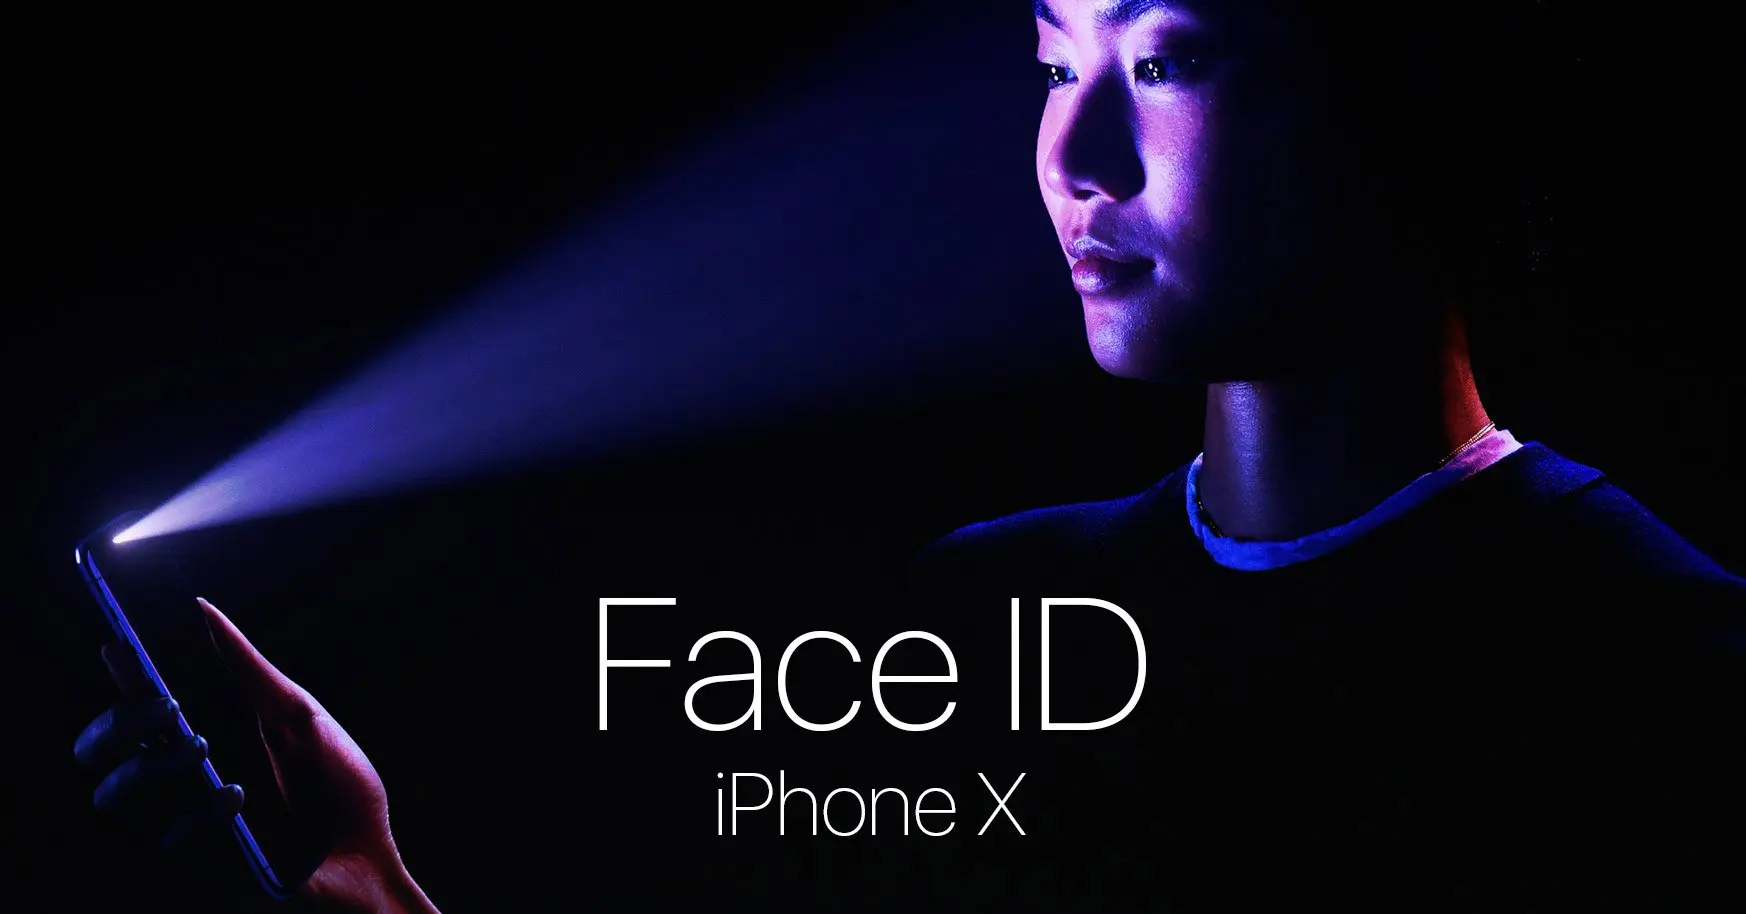 Face ID promete ser más eficiente que el Touch ID